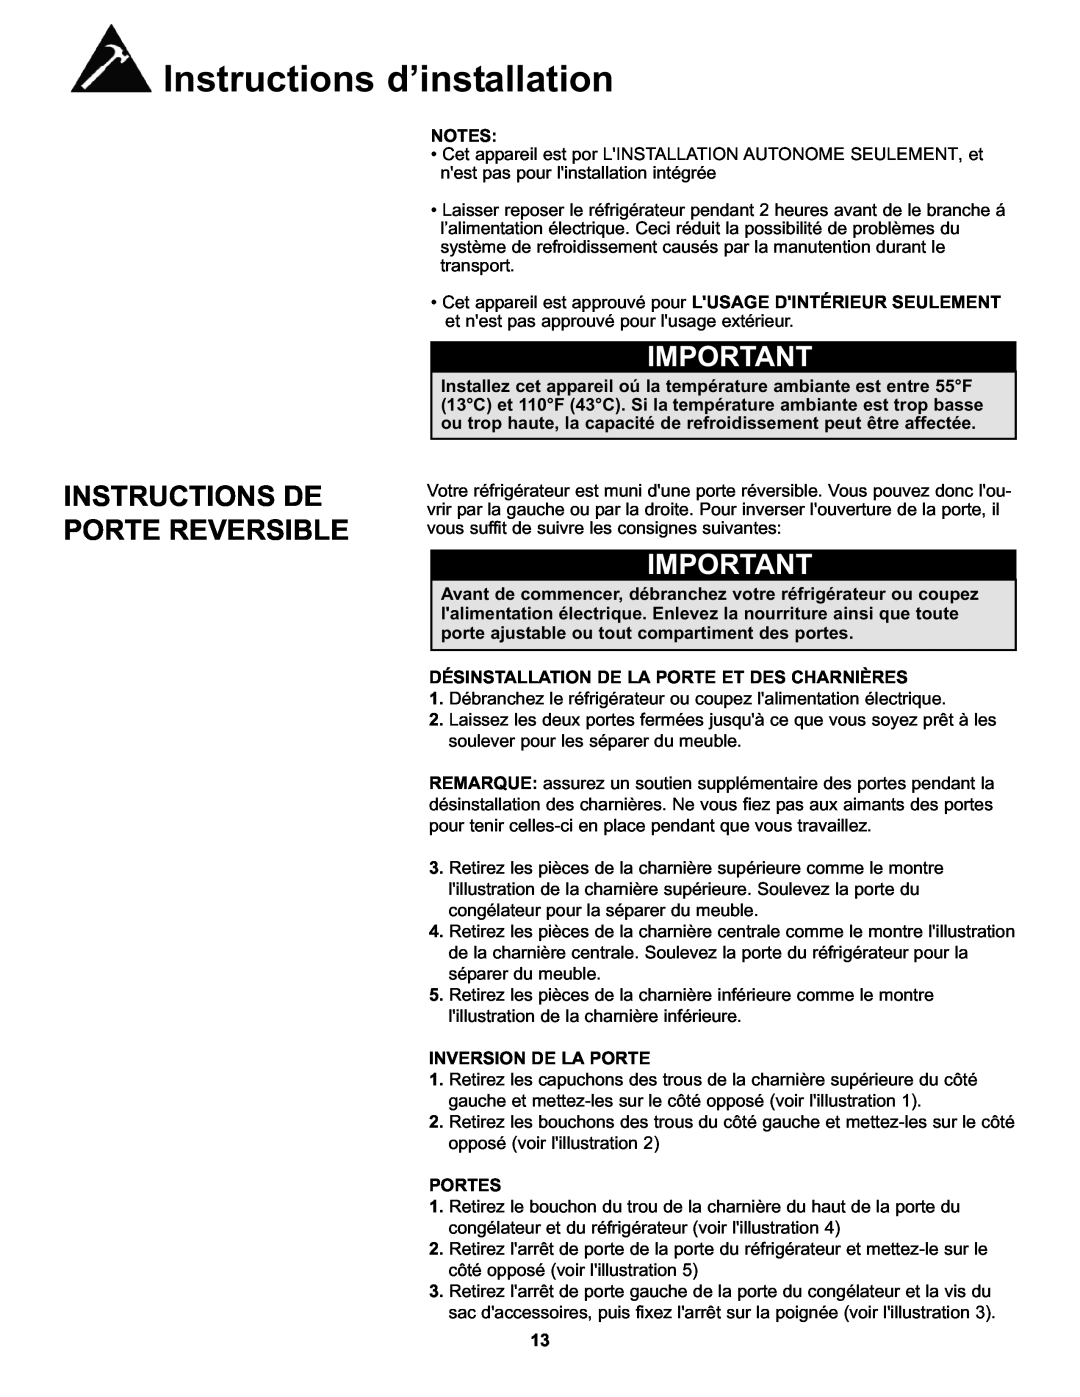 Danby DFF100A2WDB Instructions De Porte Reversible, Désinstallation De La Porte Et Des Charnières, Inversion De La Porte 